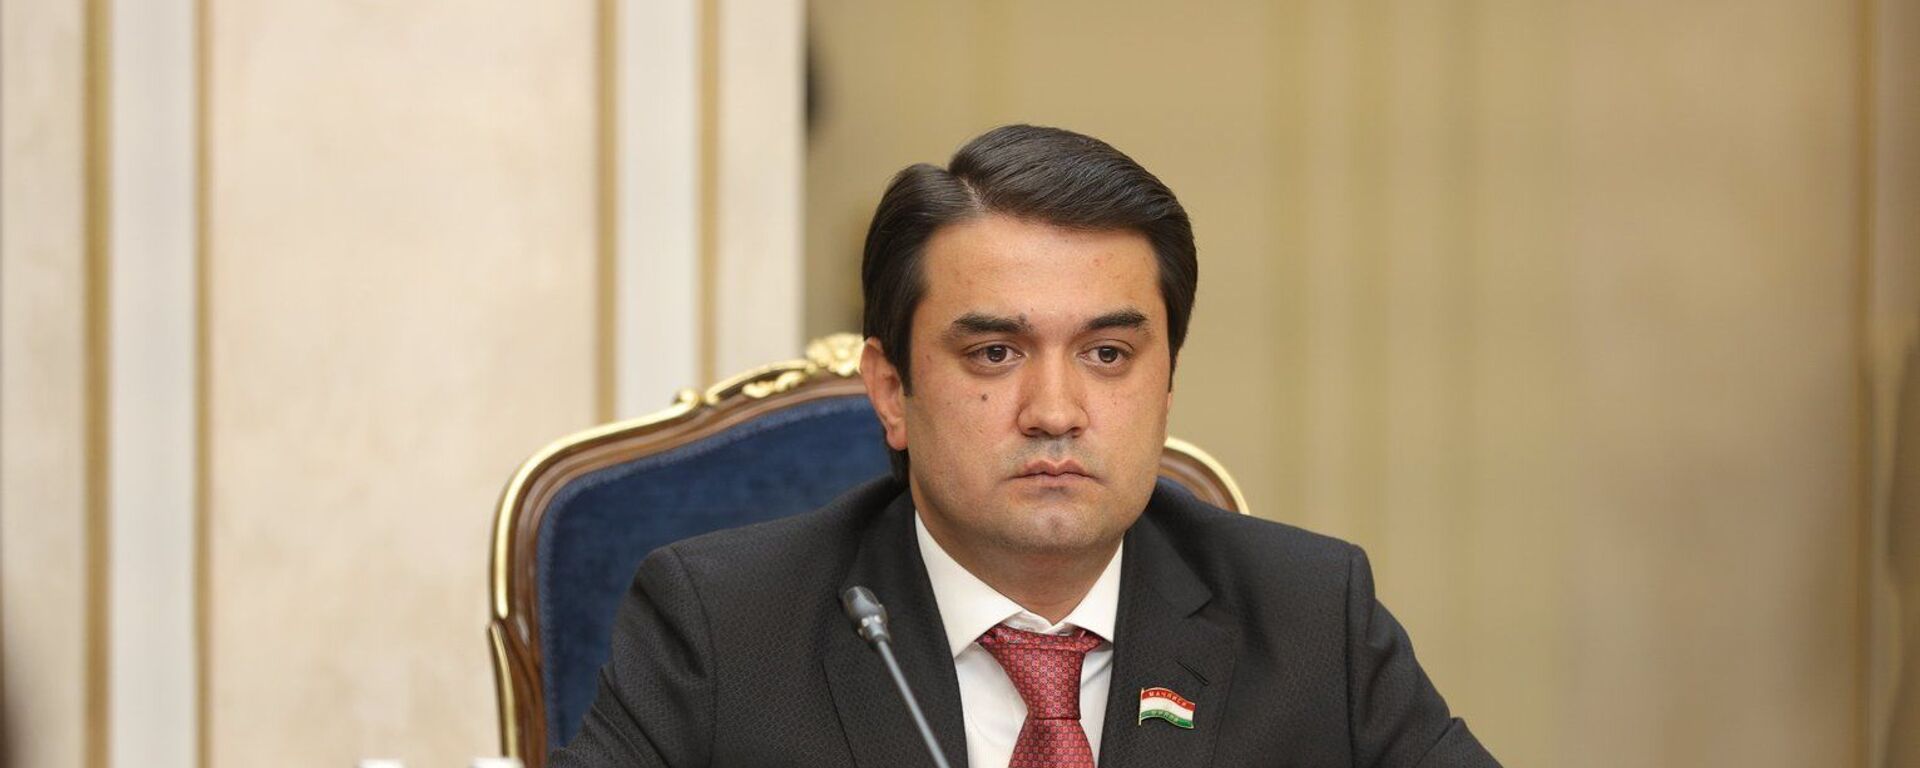 Спикер верхней палаты парламента Таджикистана Рустам Эмомали в Москве - Sputnik Таджикистан, 1920, 24.06.2021